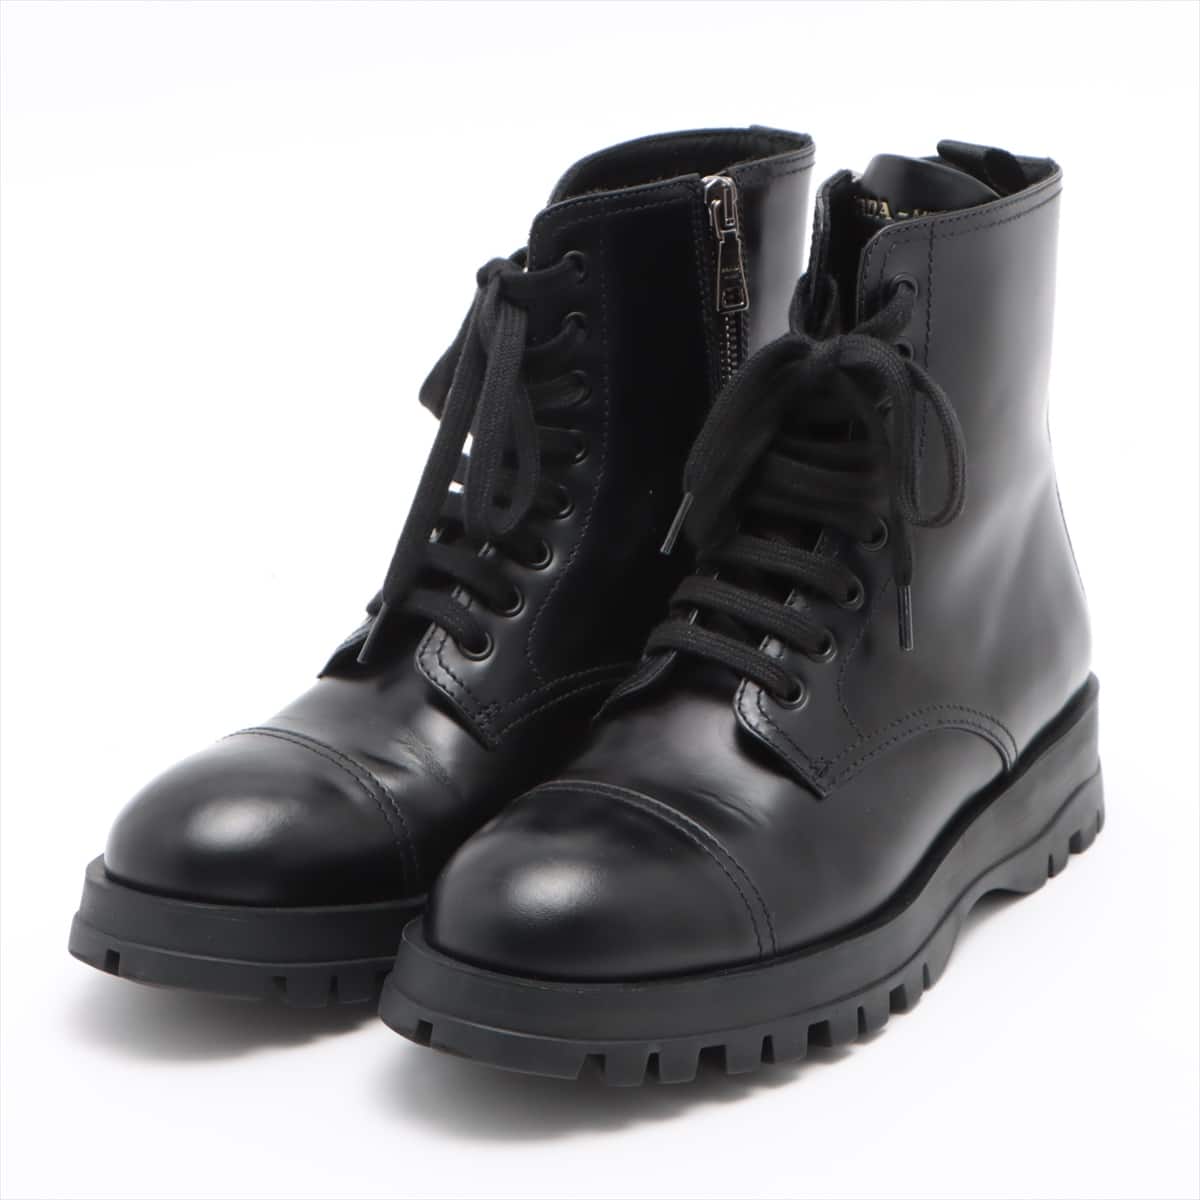 Prada Leather Short Boots 37.5 Ladies' Black